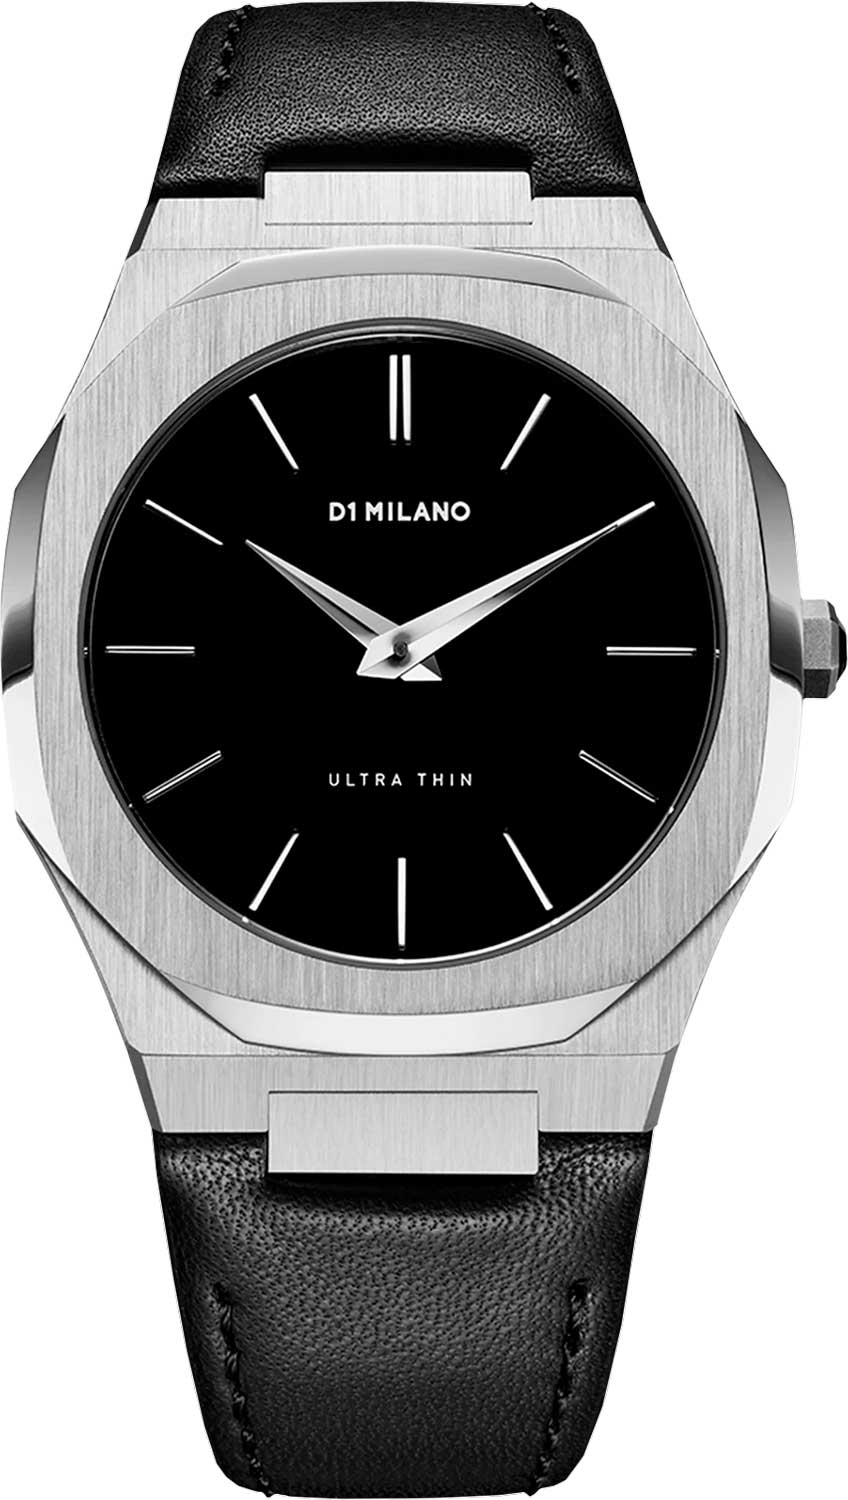 Наручные часы мужские D1 Milano UTLJ01 черные